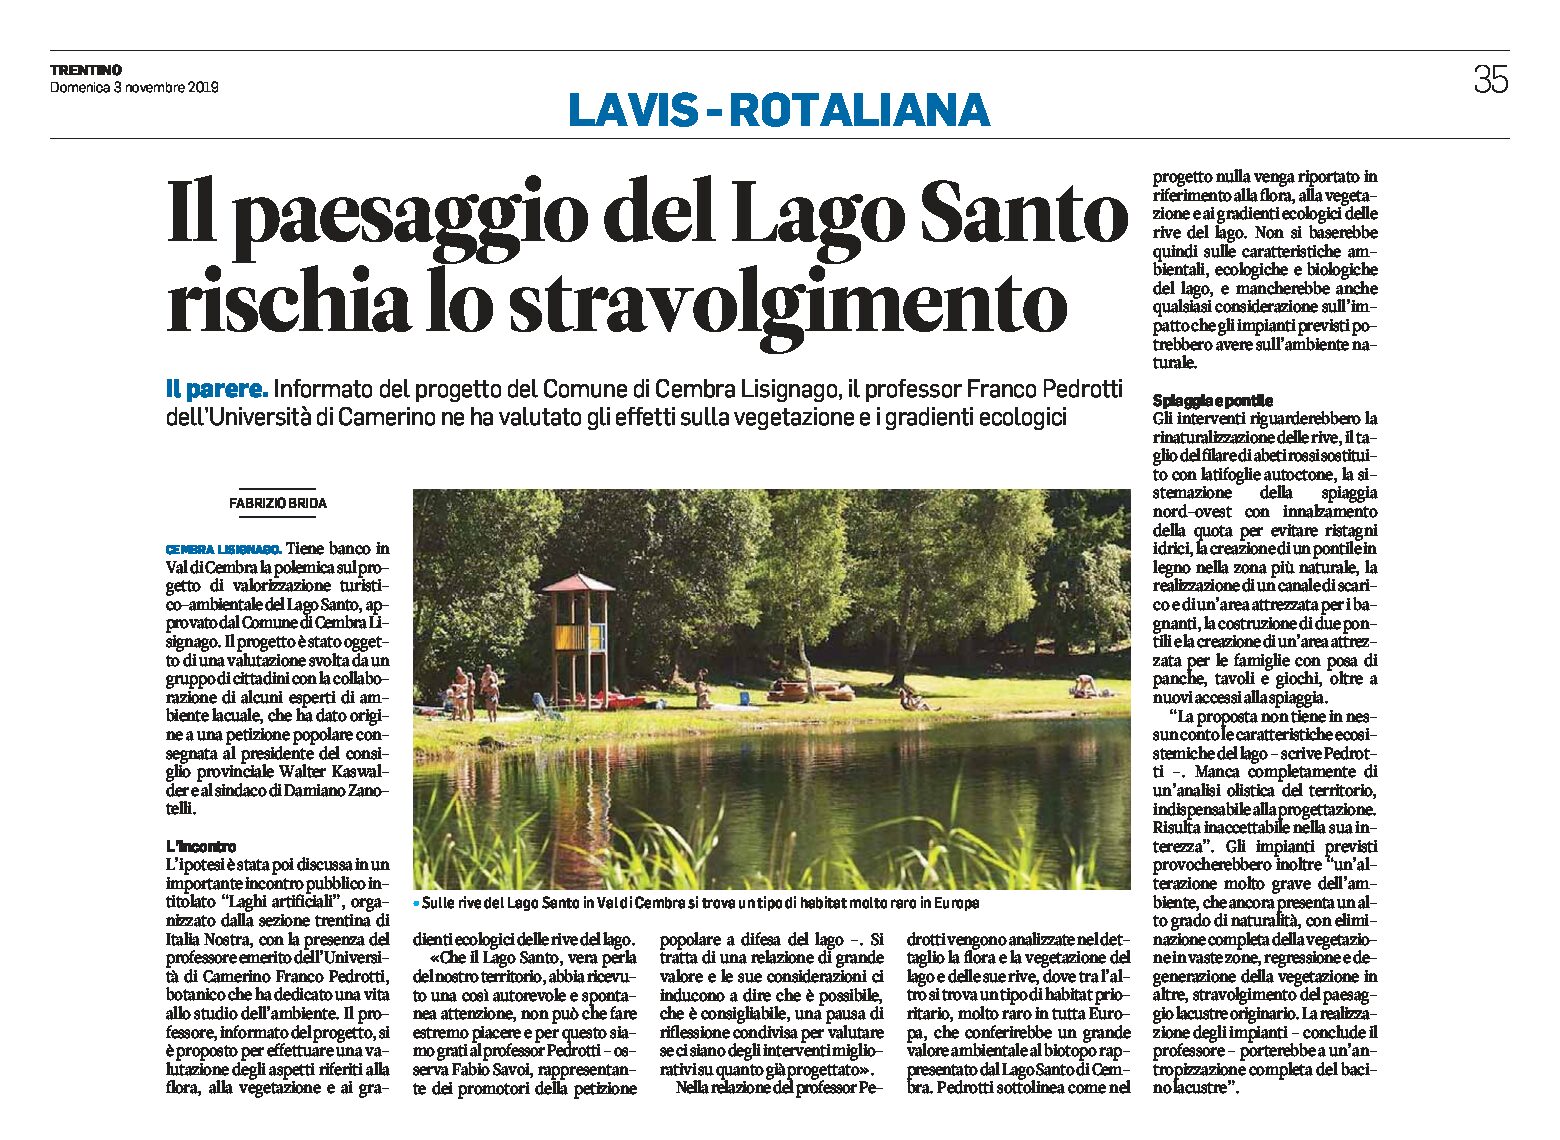 Lago Santo: il paesaggio rischia lo stravolgimento. Il professor Pedrotti ha valutato gli effetti del progetto